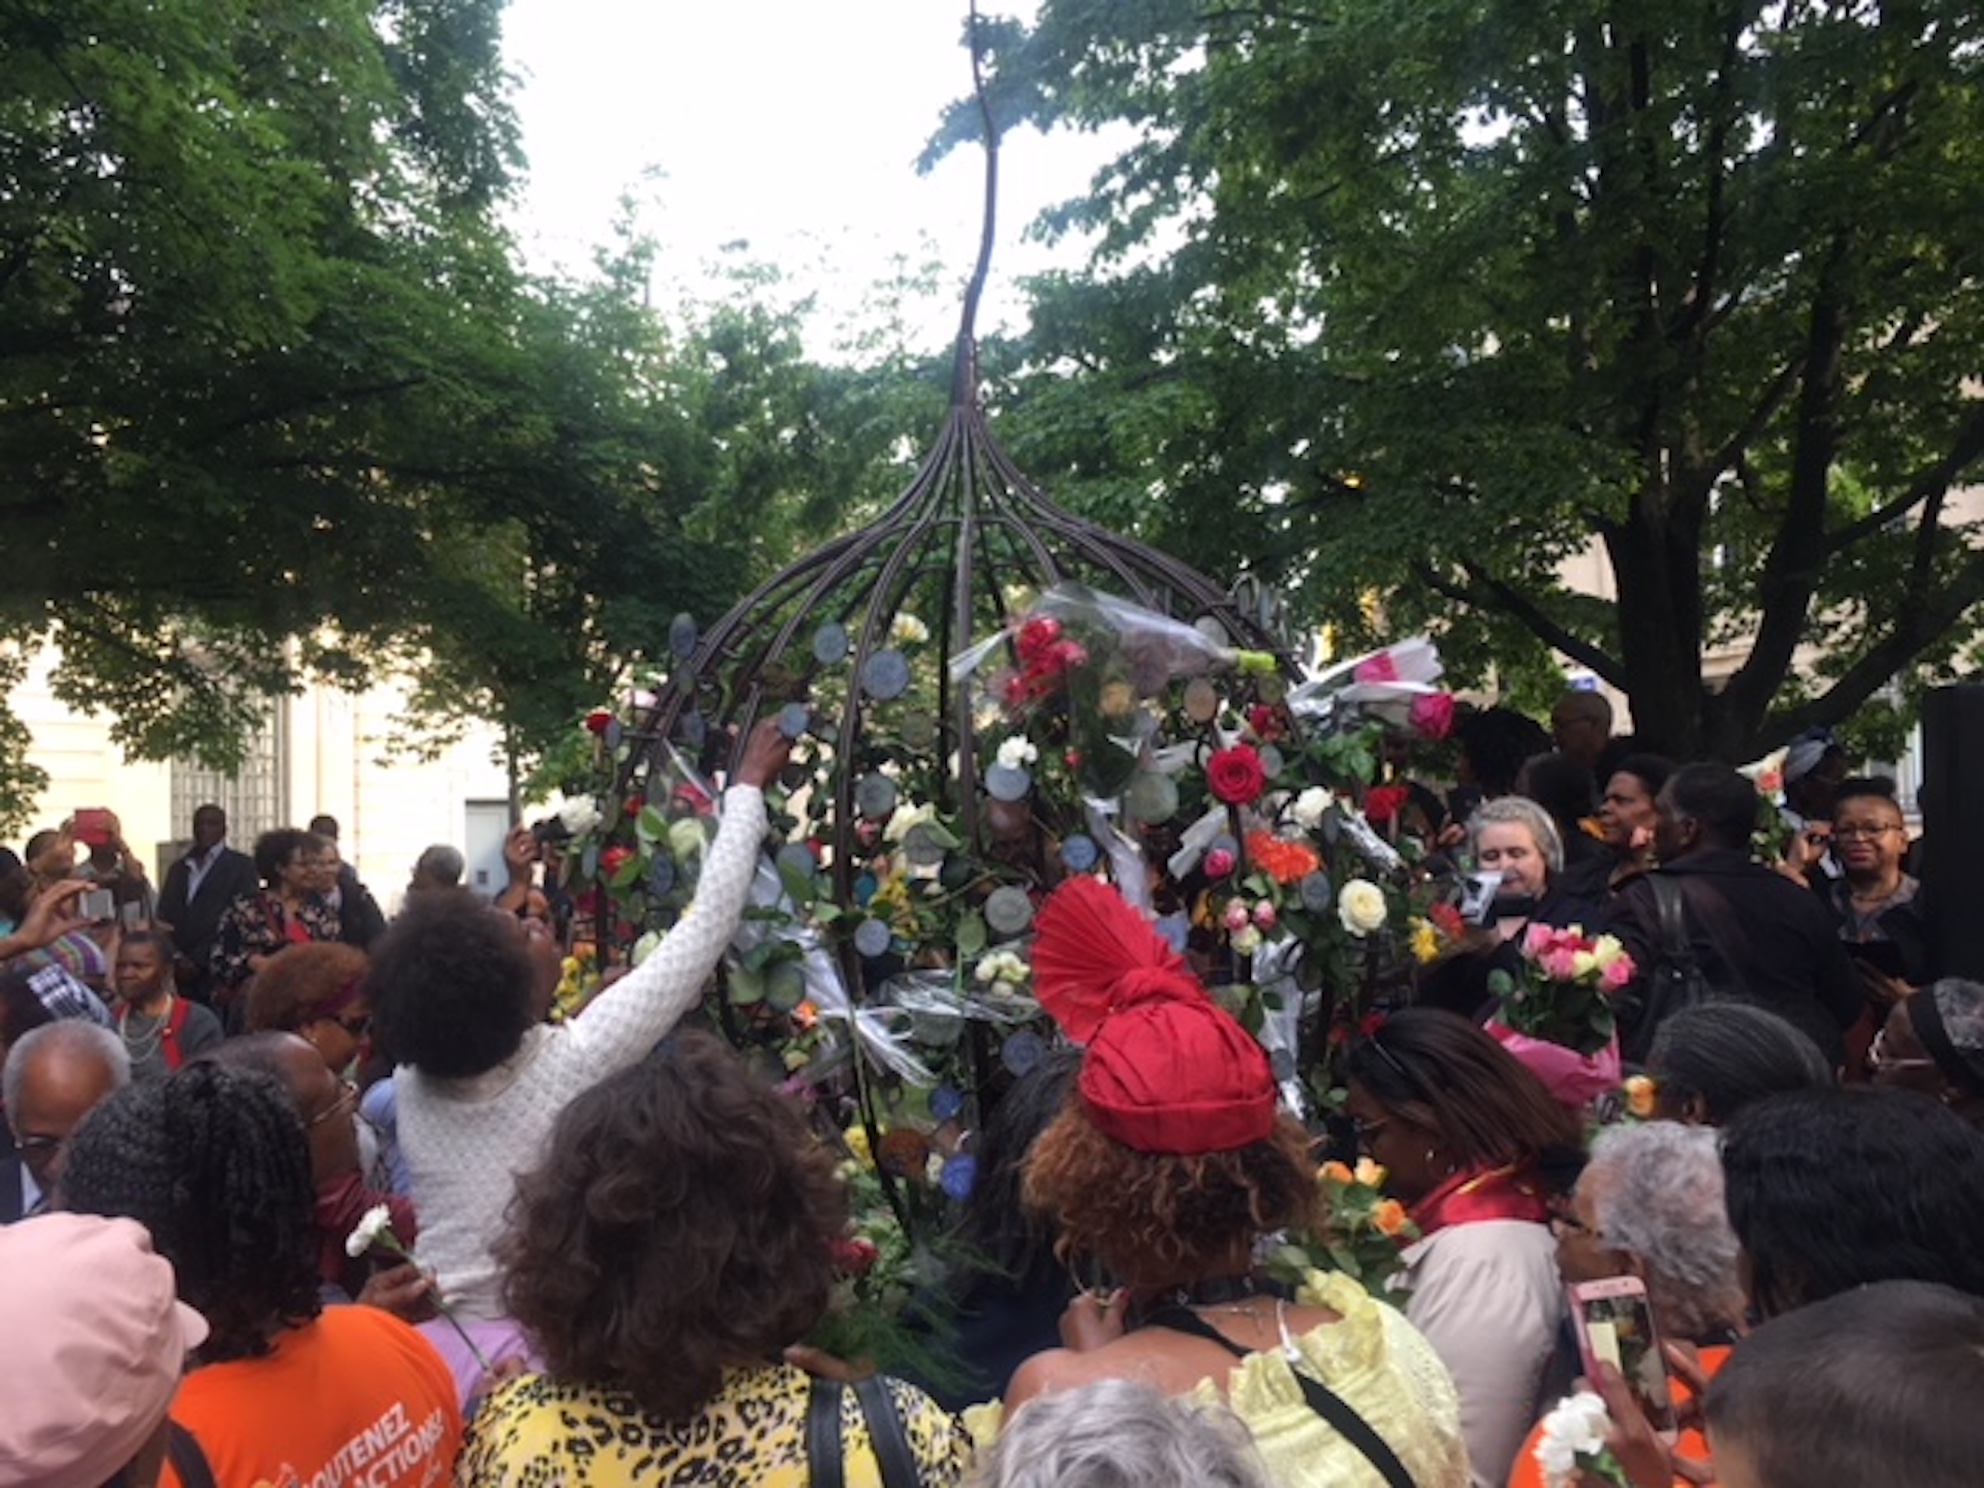     [AUDIO] "Le Mémorial des Tuileries en hommage aux victimes de l'esclavage colonial sera avec leurs noms ou ne sera pas"

